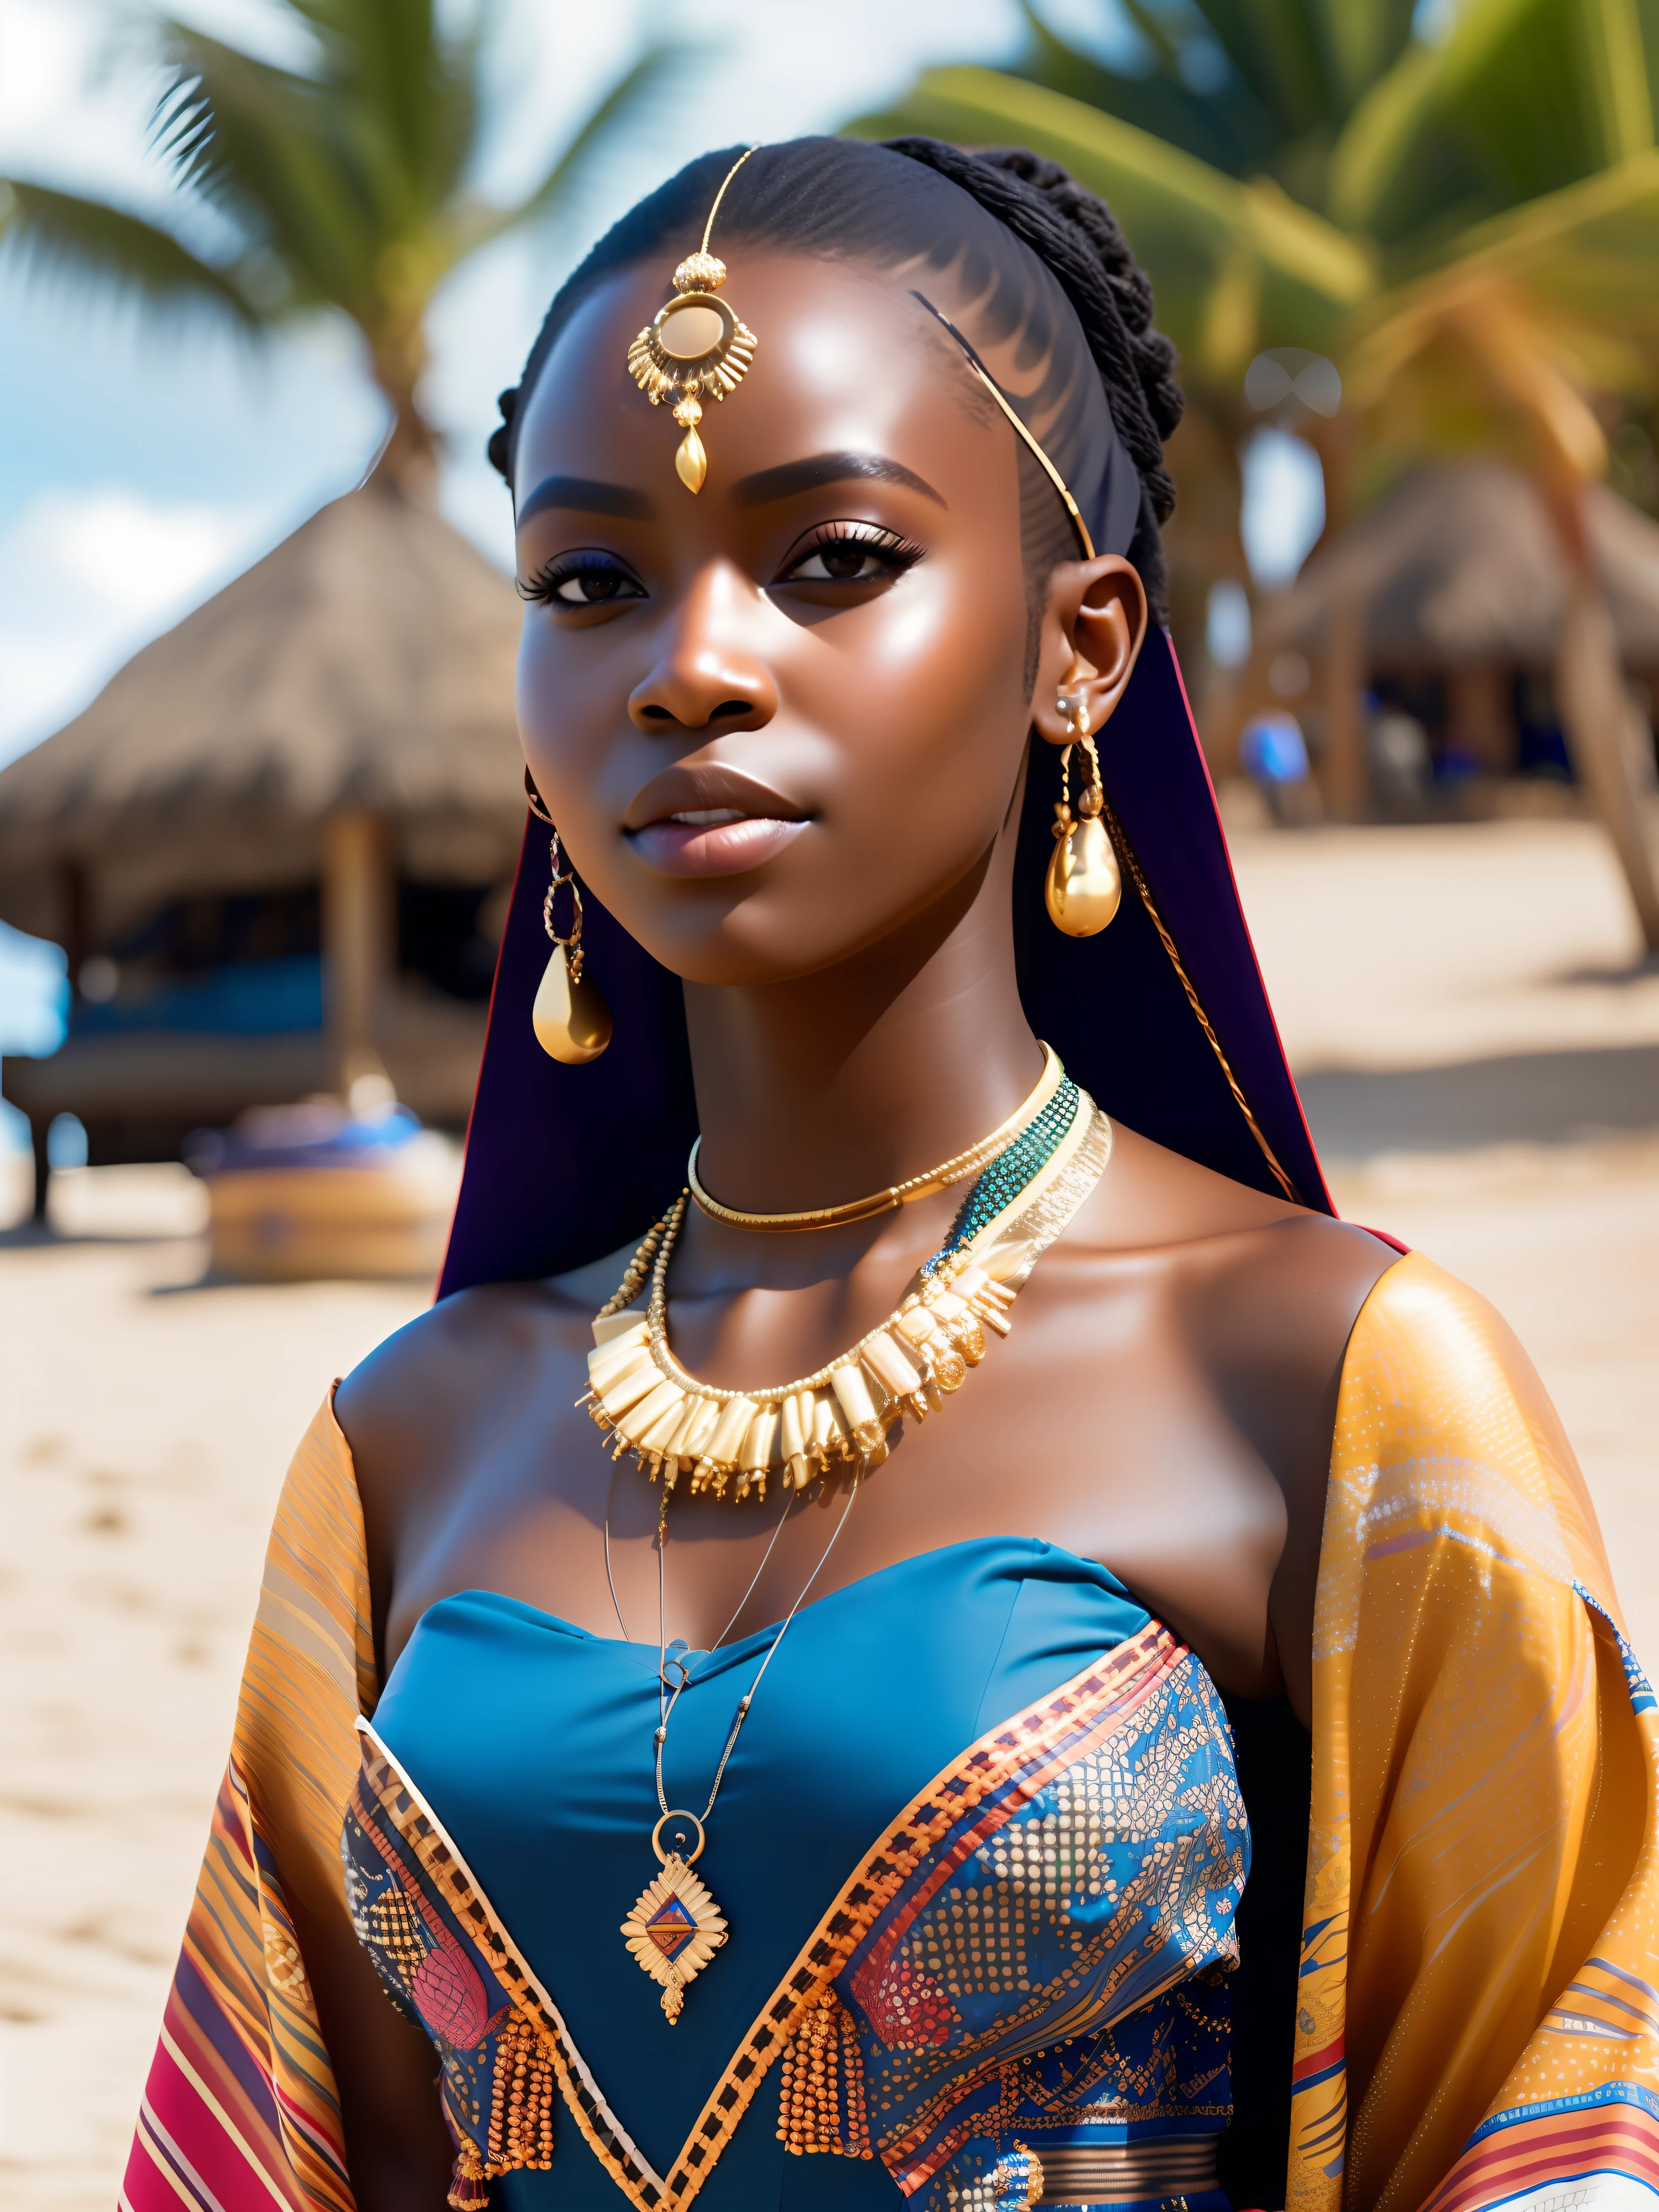 fking_الخيال العلمي, fking_الخيال العلمي_v2, صورة لامرأة أفريقية شابة جميلة جدًا أمام الشاطئ, الملابس الملونة الغنية, المجوهرات الأفريقية الذهبية, عن قرب, الموقف الملكي والموقف. fking_سينما_v2. fking_سينما_v2